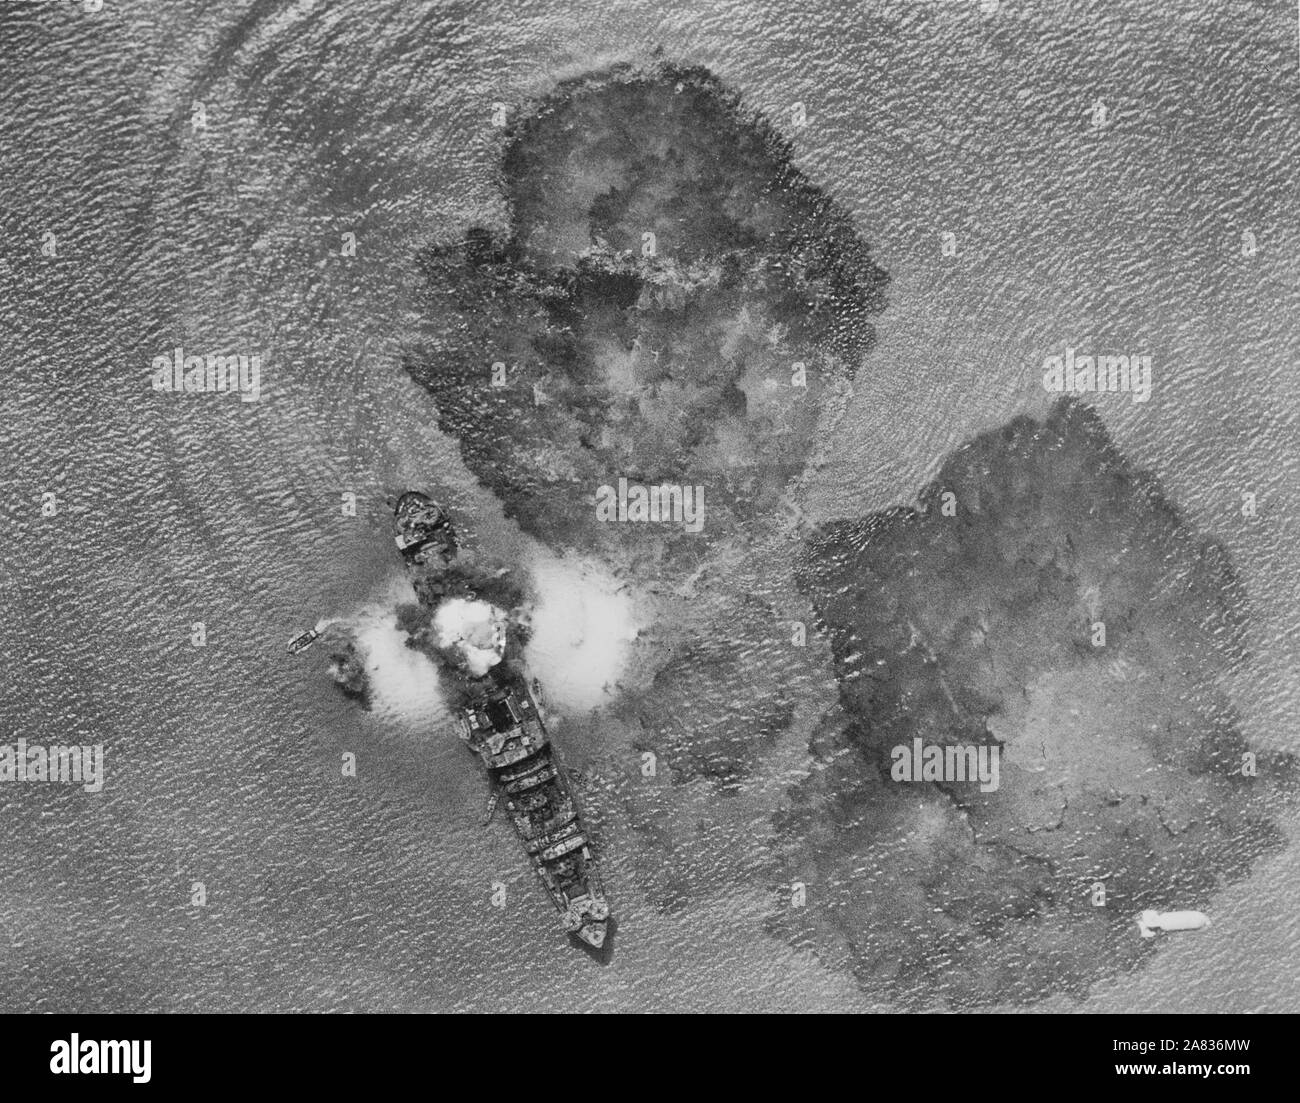 Un navire marchand japonais 7 000 tonnes après un coup direct par l'Inde Task forces de l'air près de Rangoon, en Inde. Une bombe est à la baisse dans la partie inférieure droite de l'image et de petites embarcations sont à essayer d'exécuter l'équipage du navire coulé. Les eaux sont couvertes de marée noire. Circa 1943 Banque D'Images